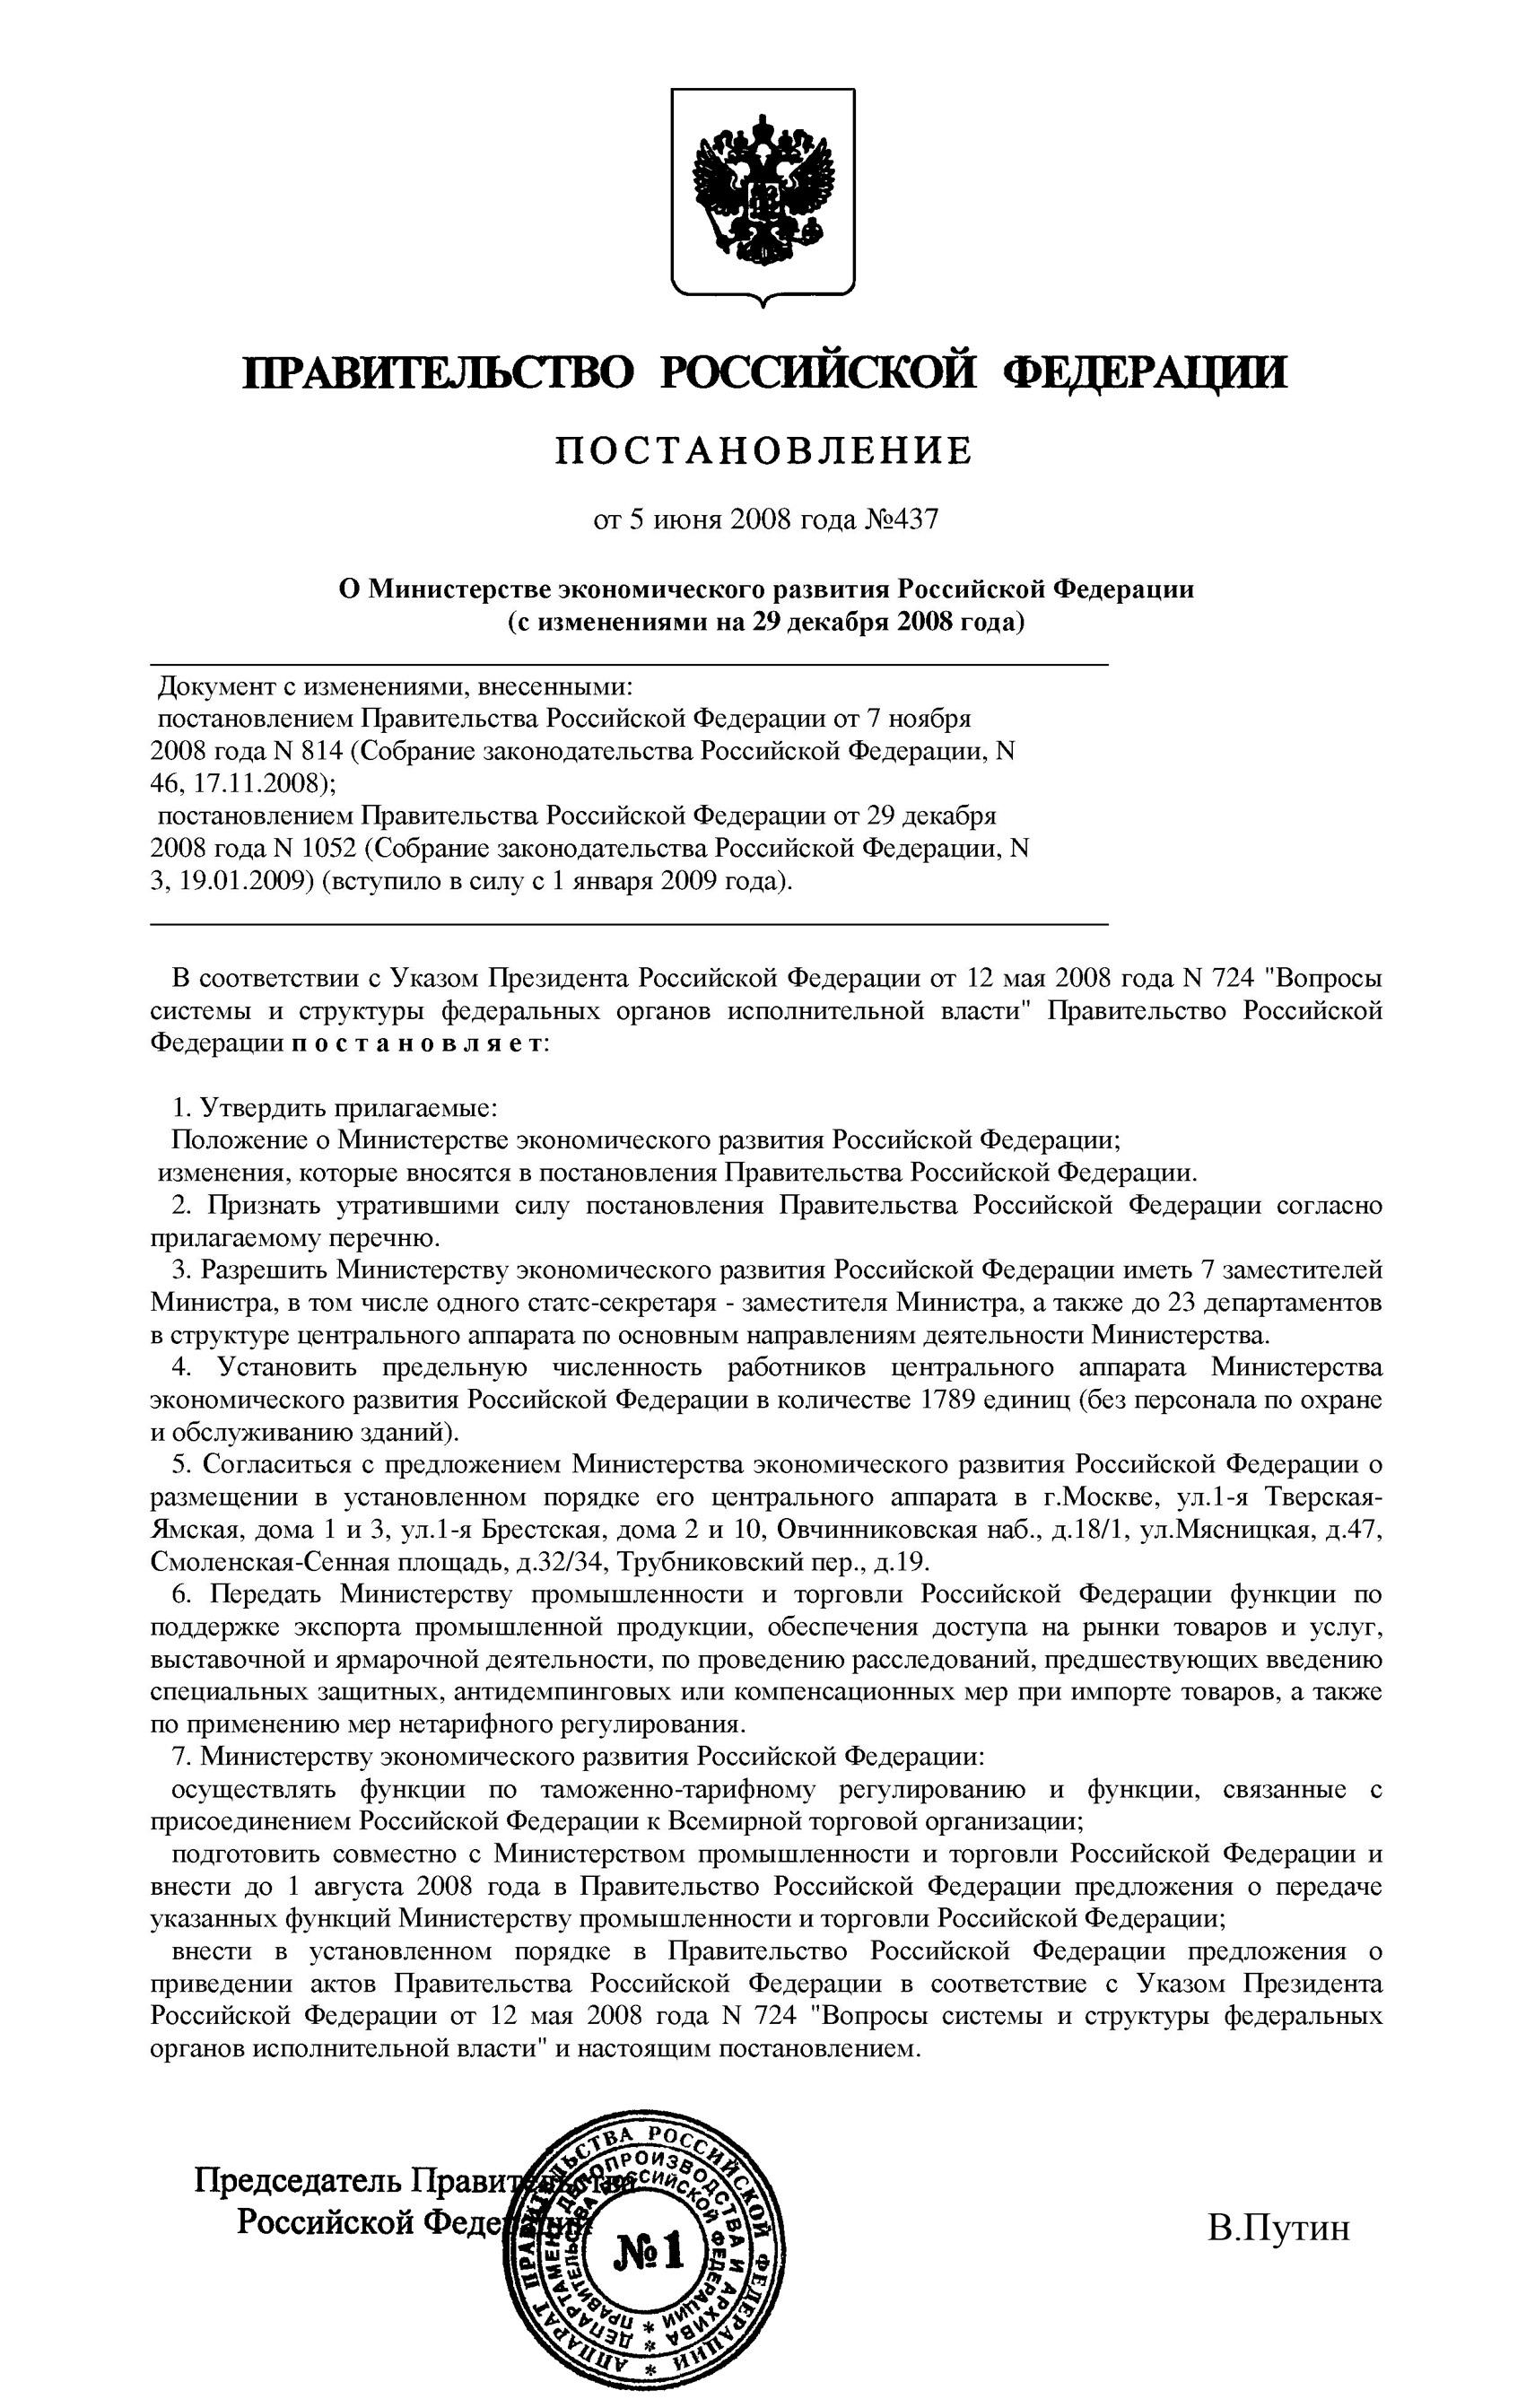 Постановление Правительства РФ от 5 июня 2008 г. № 437